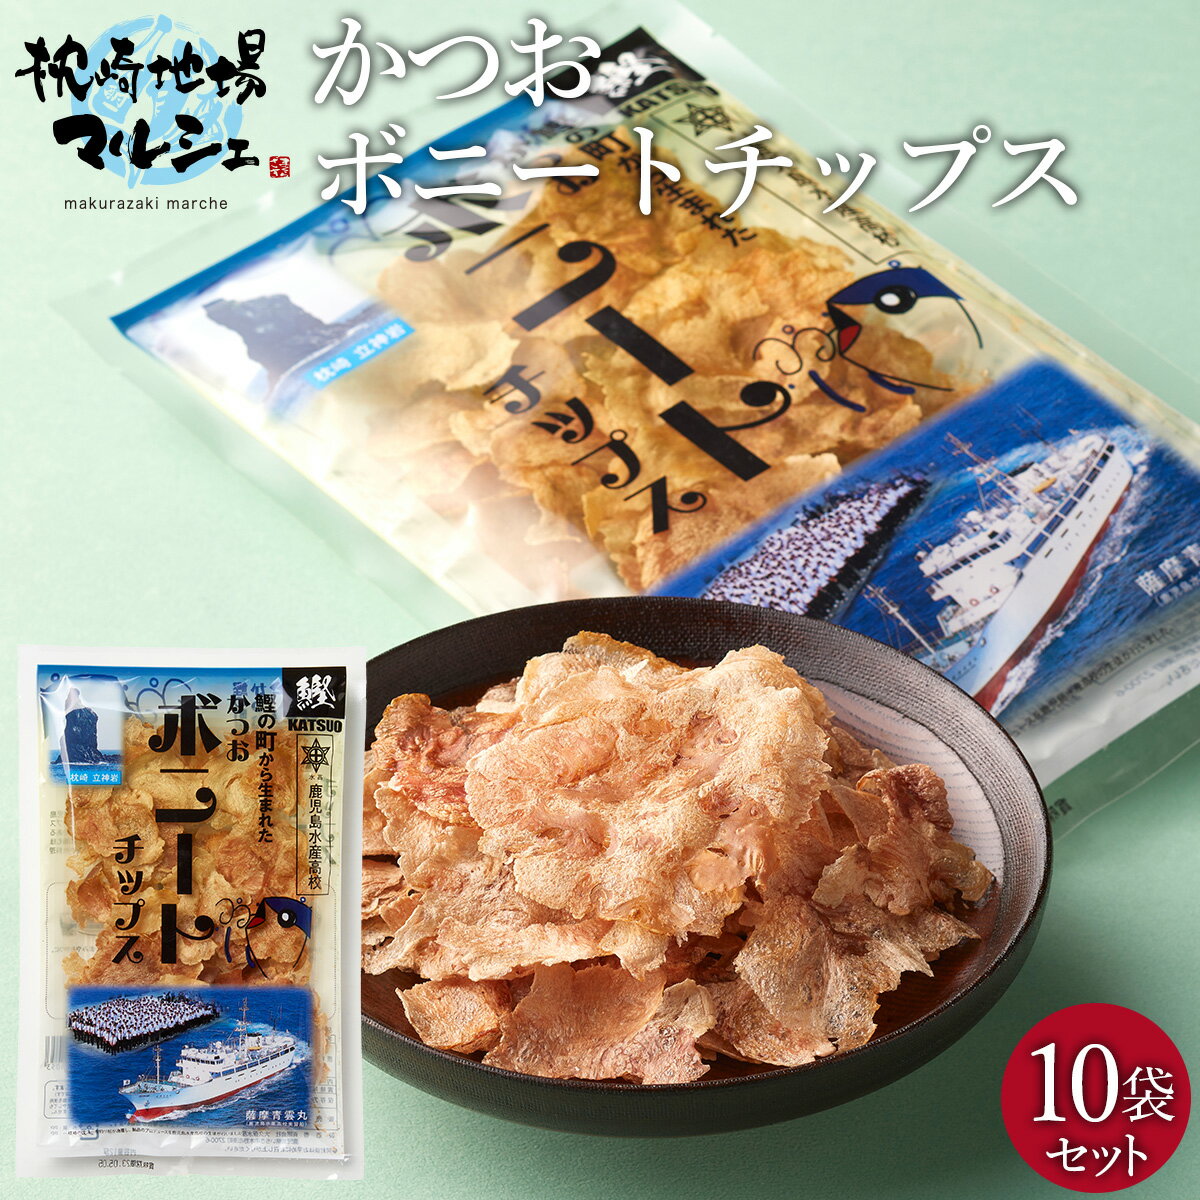 かつおボニートチップス 10袋セット 枕崎市漁業協同組合 送料無料 おつまみ おやつ スナック菓子